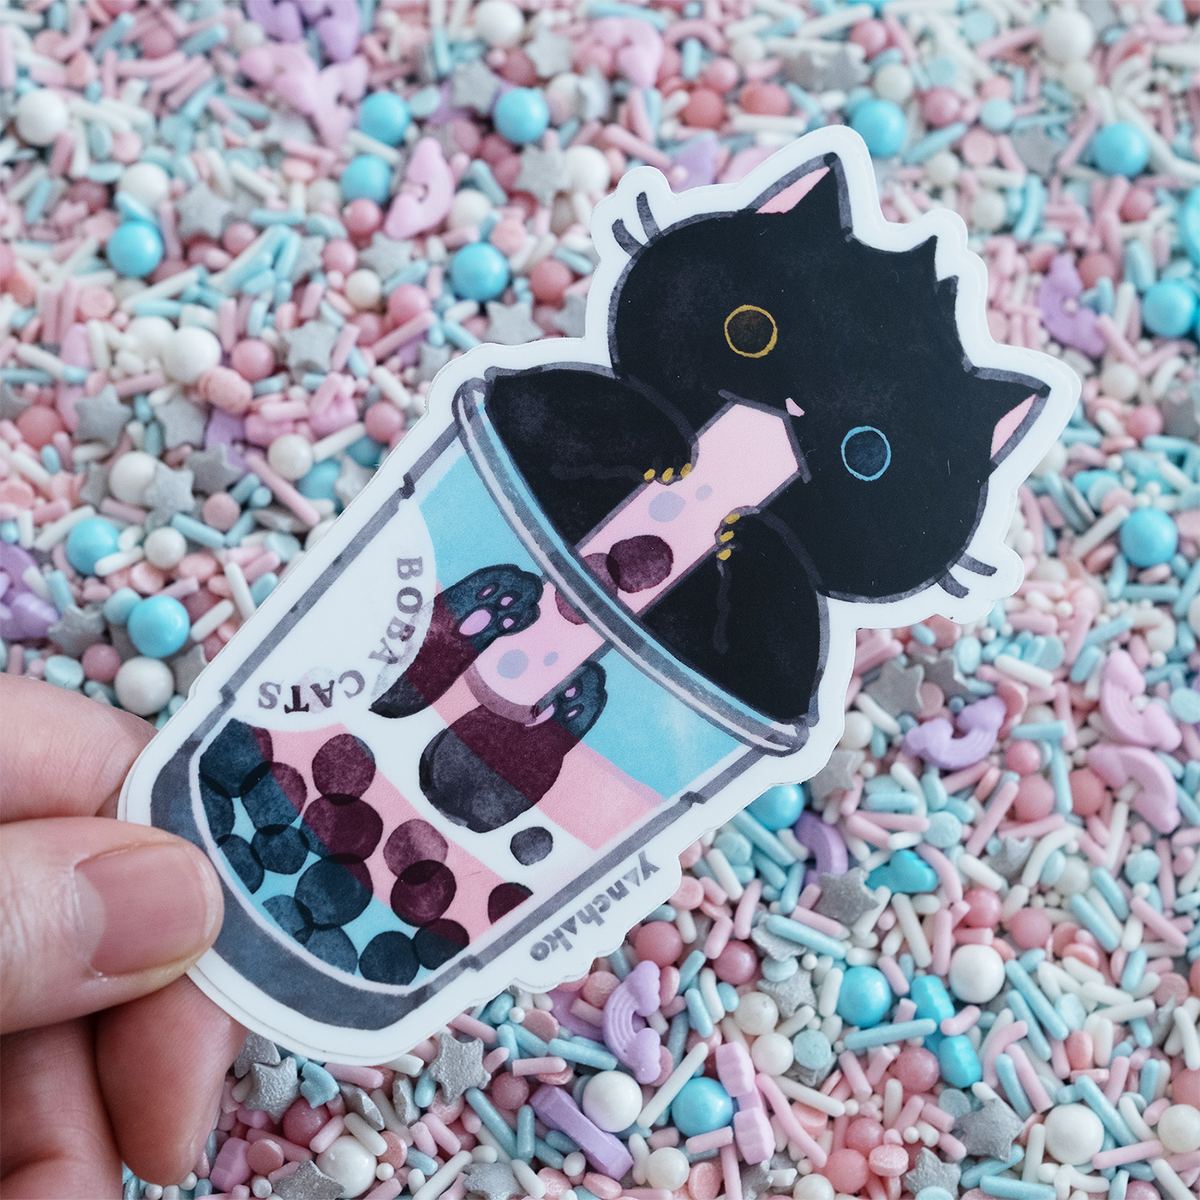 Boba Cat Enamel Pin // Black Cat, Kawaii Pin, Cute Bubble Tea